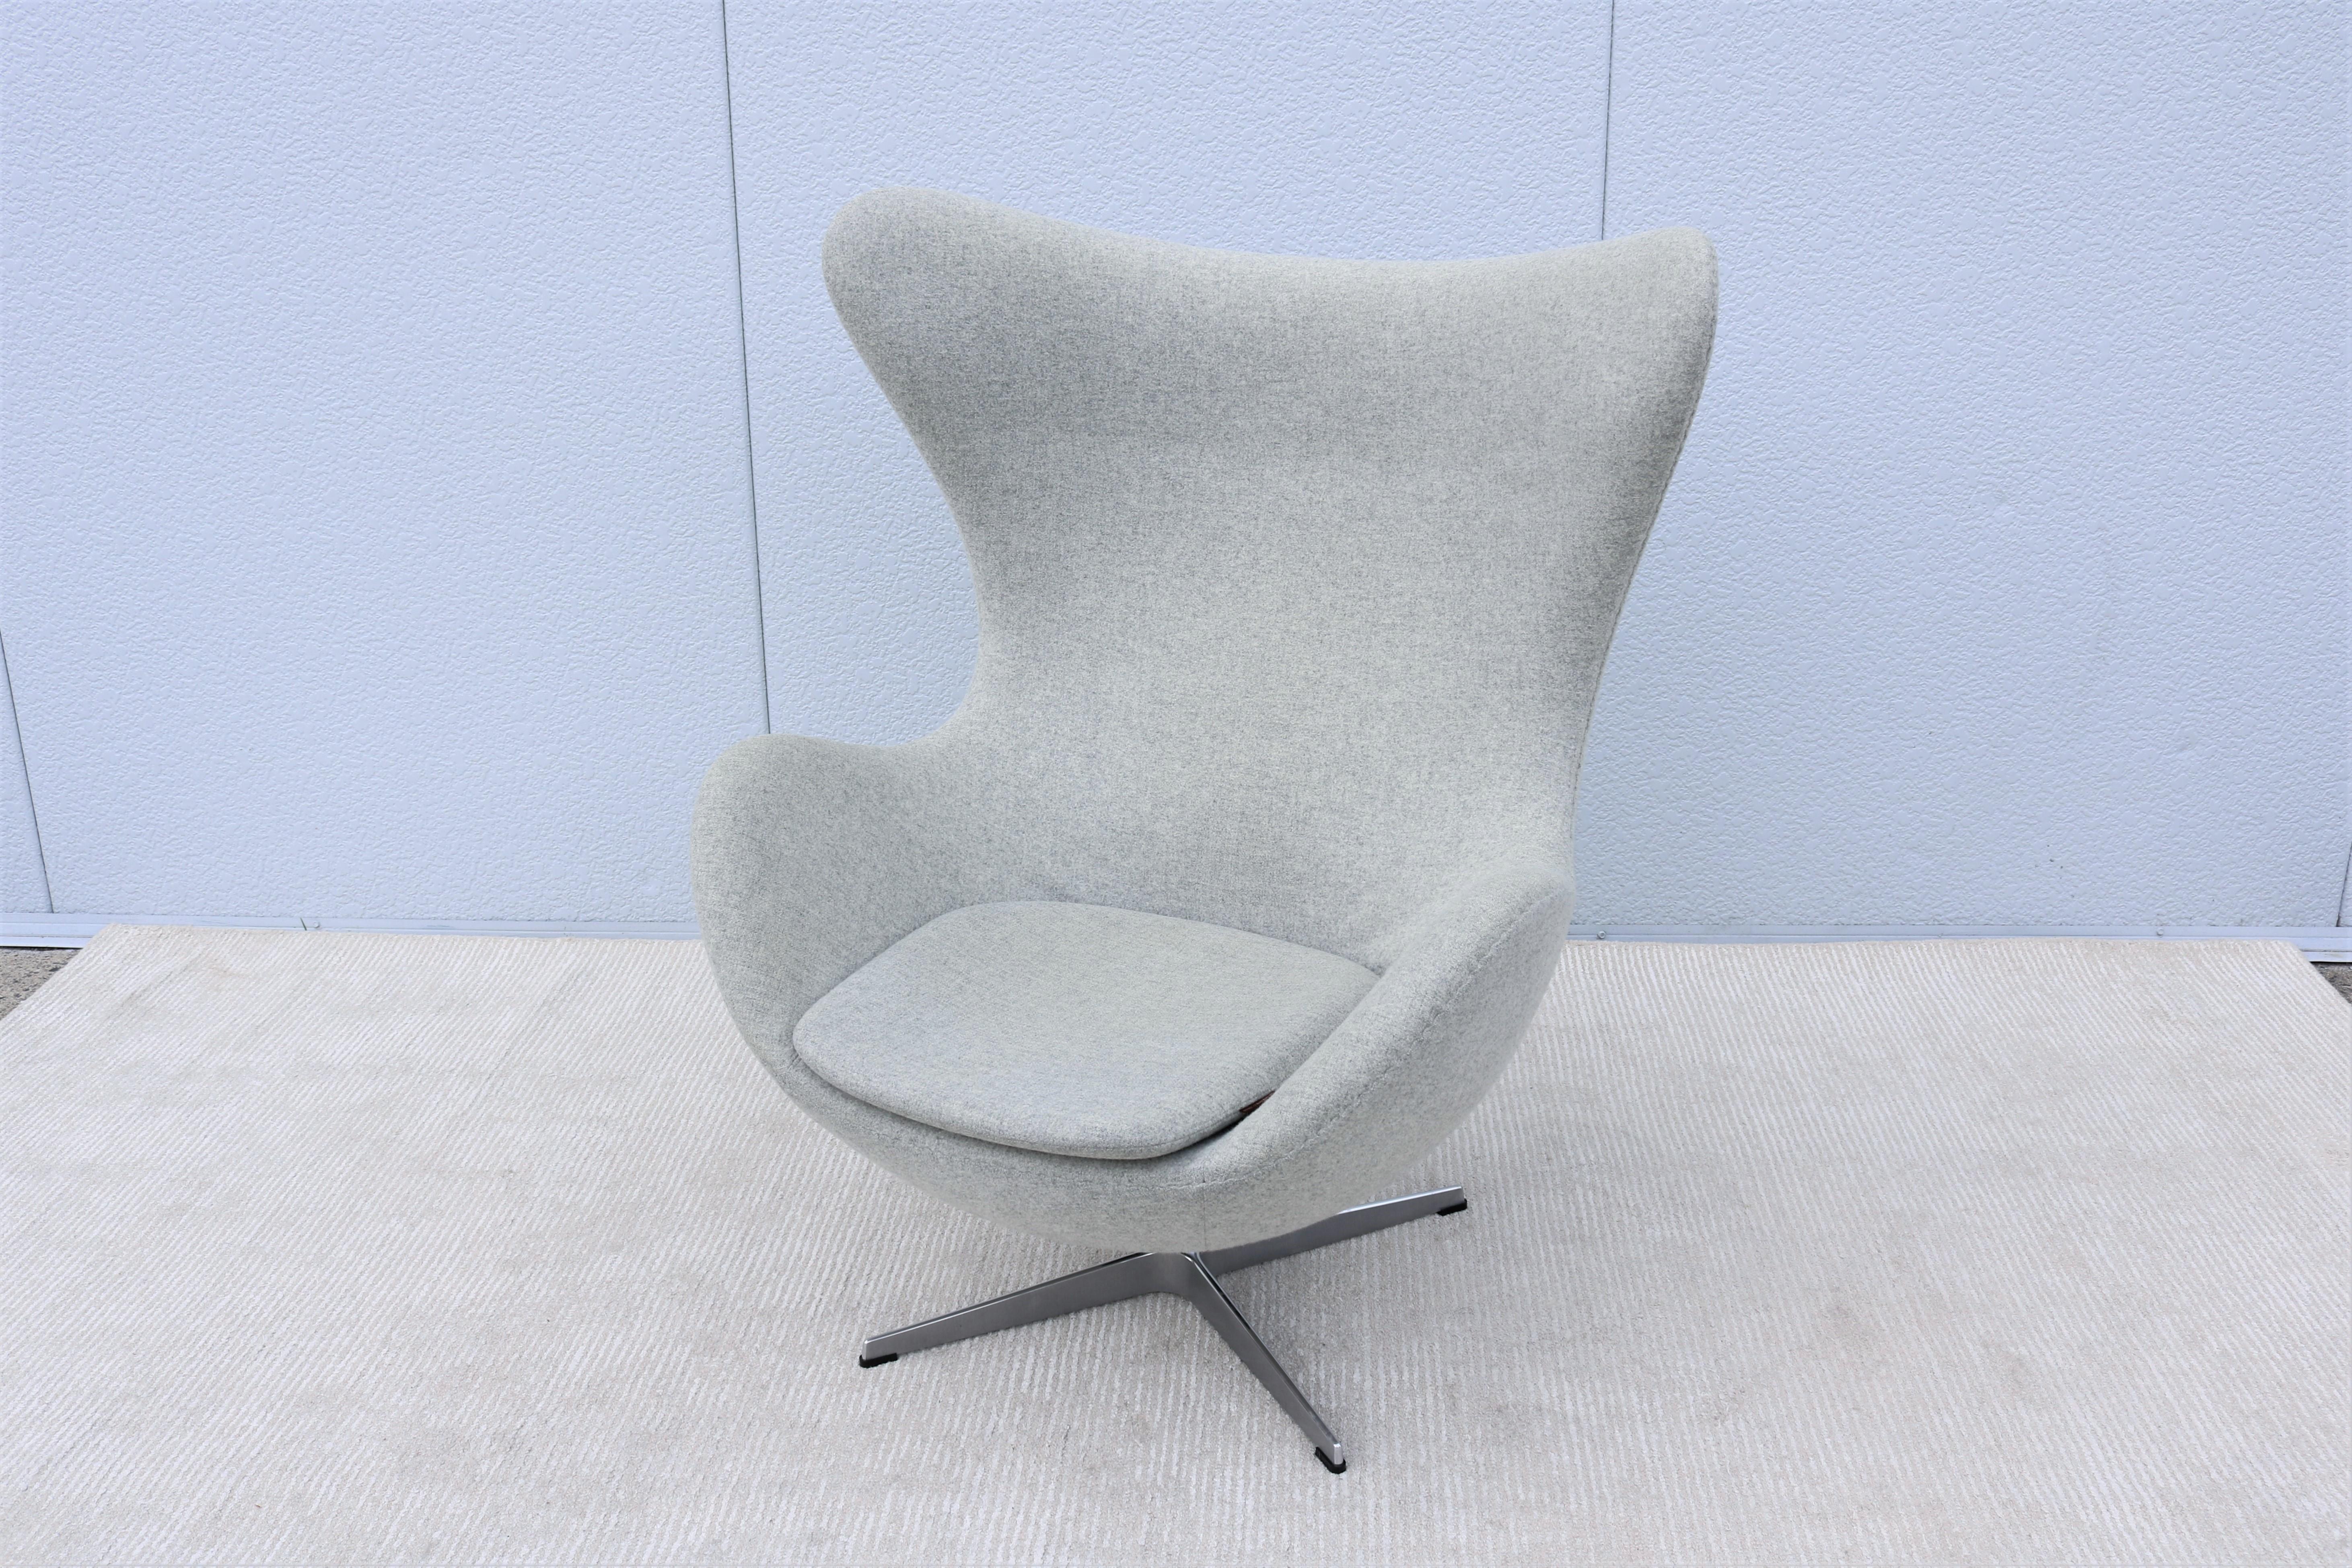 La magnifique chaise Egg d'Arne Jacobsen est un chef-d'œuvre éternel du design danois, tel un sculpteur.
Jacobsen s'est efforcé de façonner la forme parfaite du coquillage en expérimentant avec du fil de fer et du plâtre dans son garage.
Jacobsen a